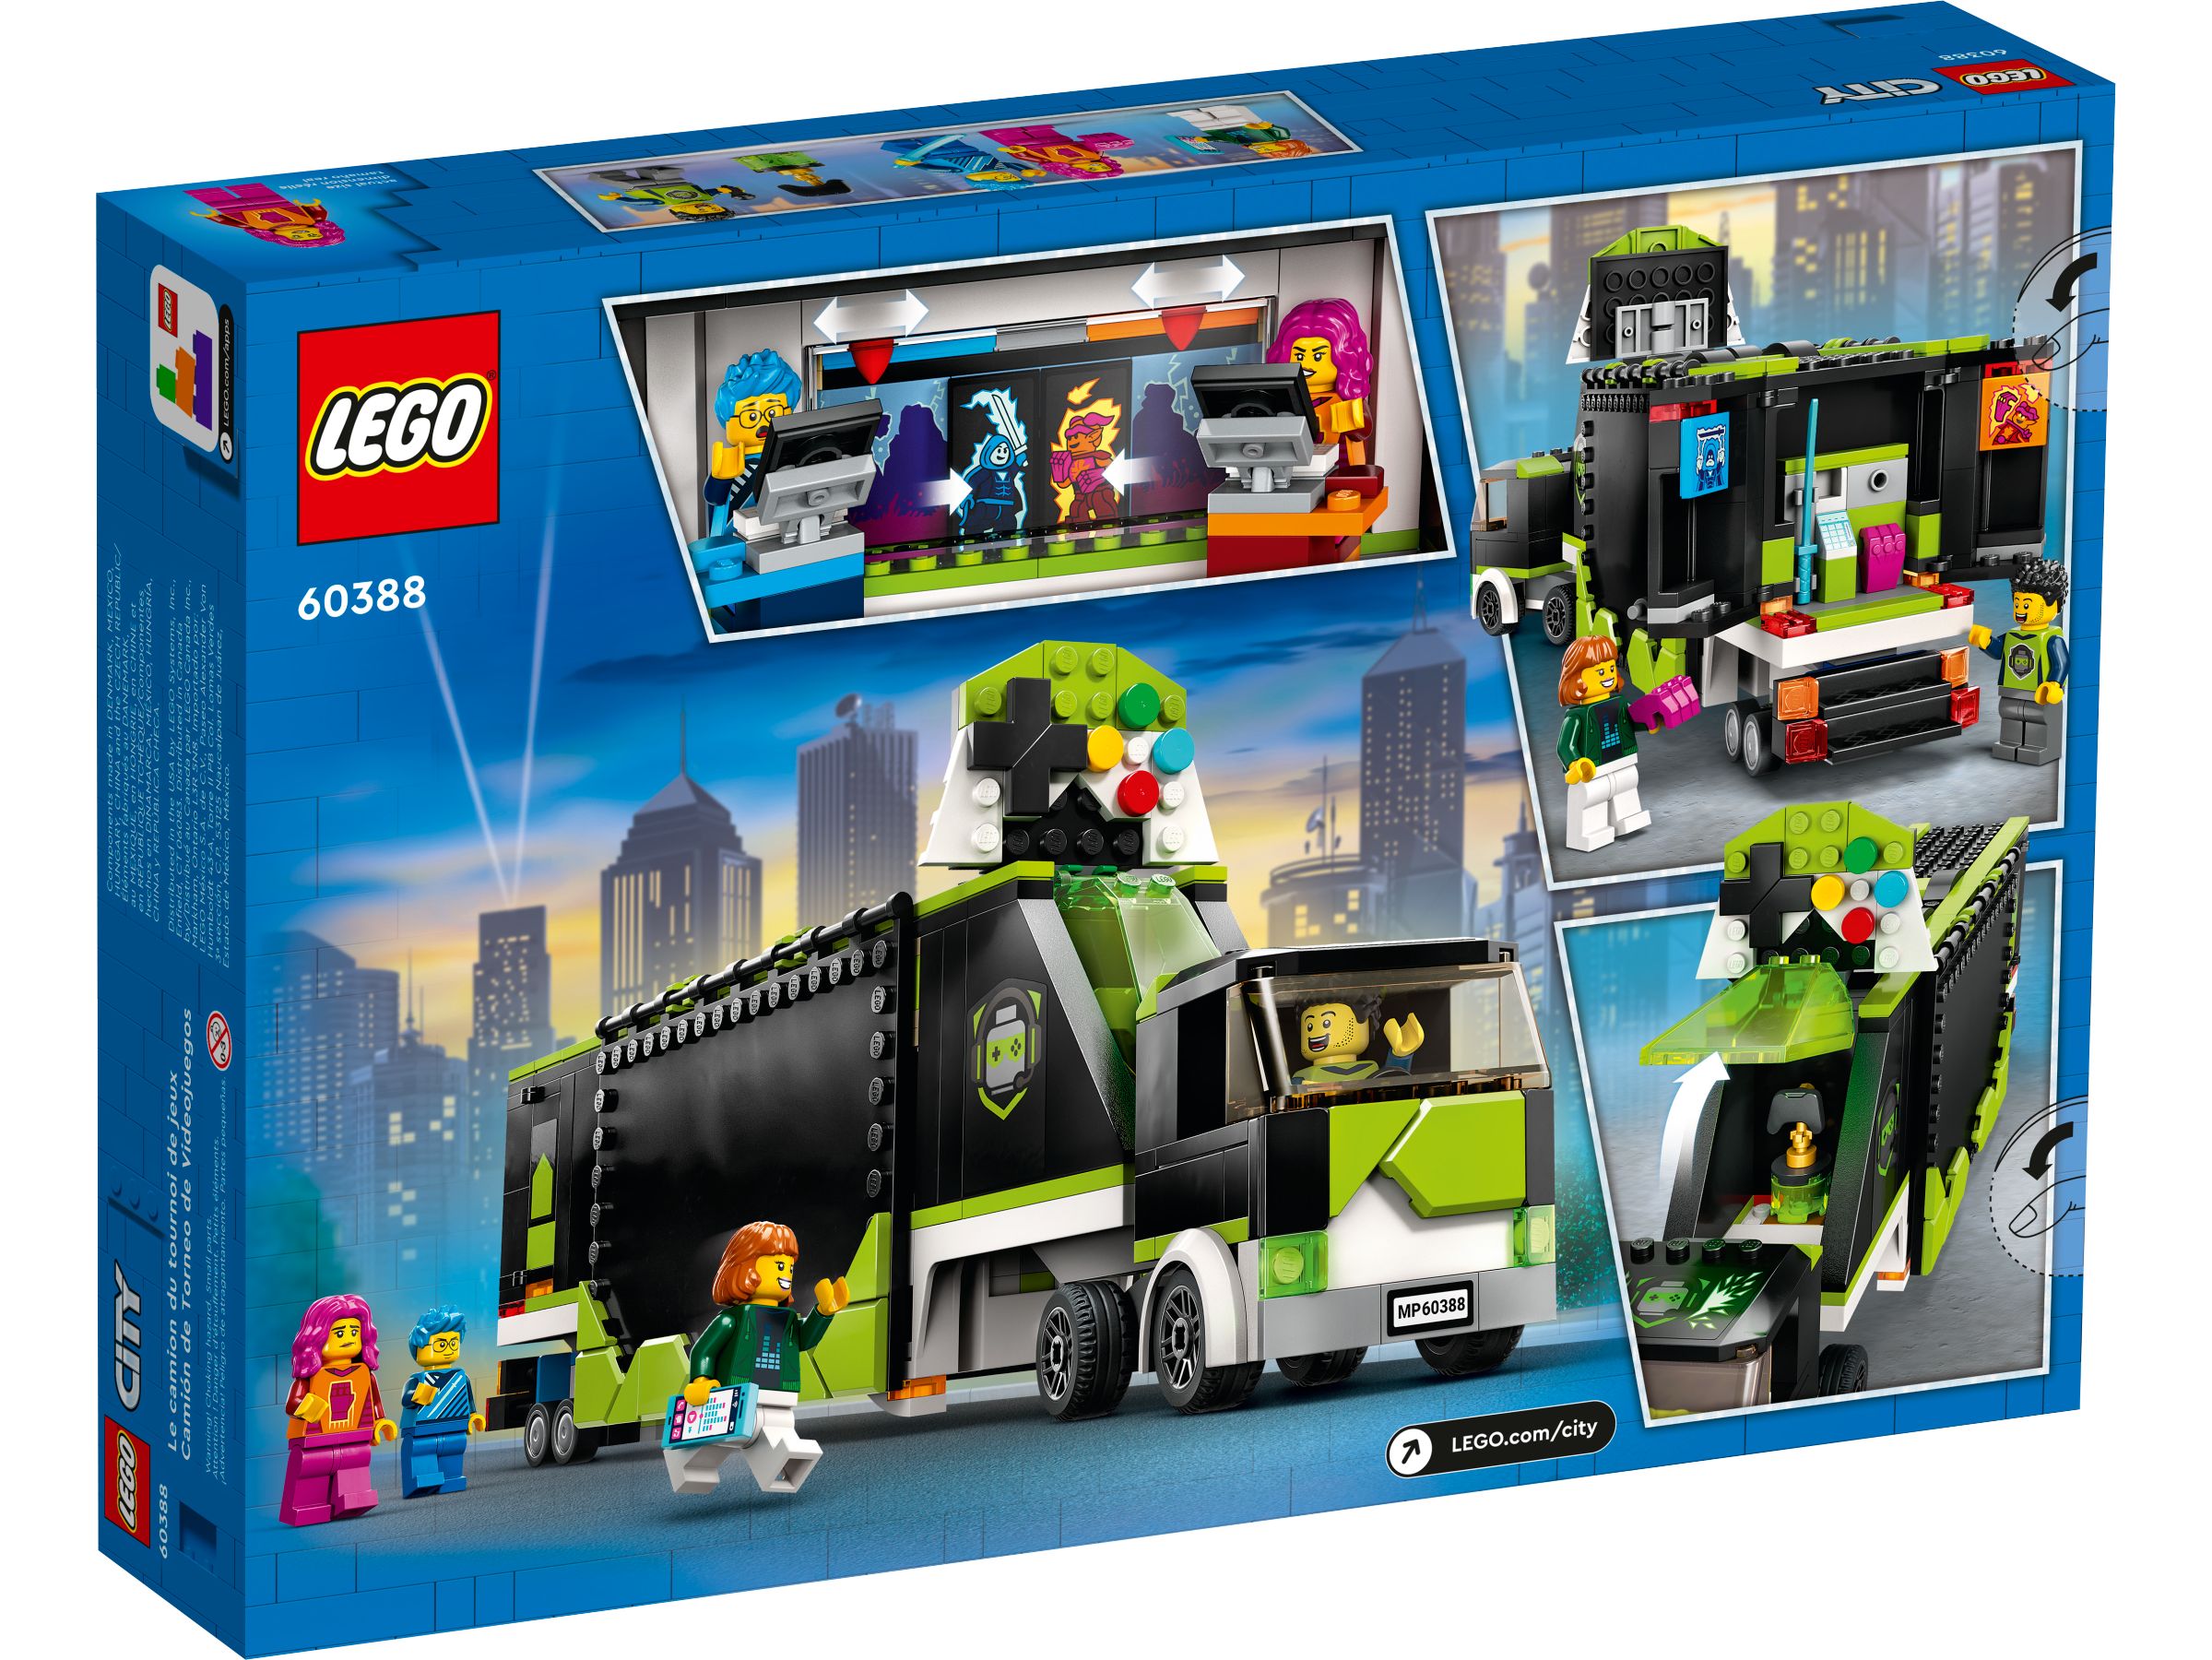 LEGO City 60388 Gaming Turnier Truck LEGO_60388_alt7.jpg